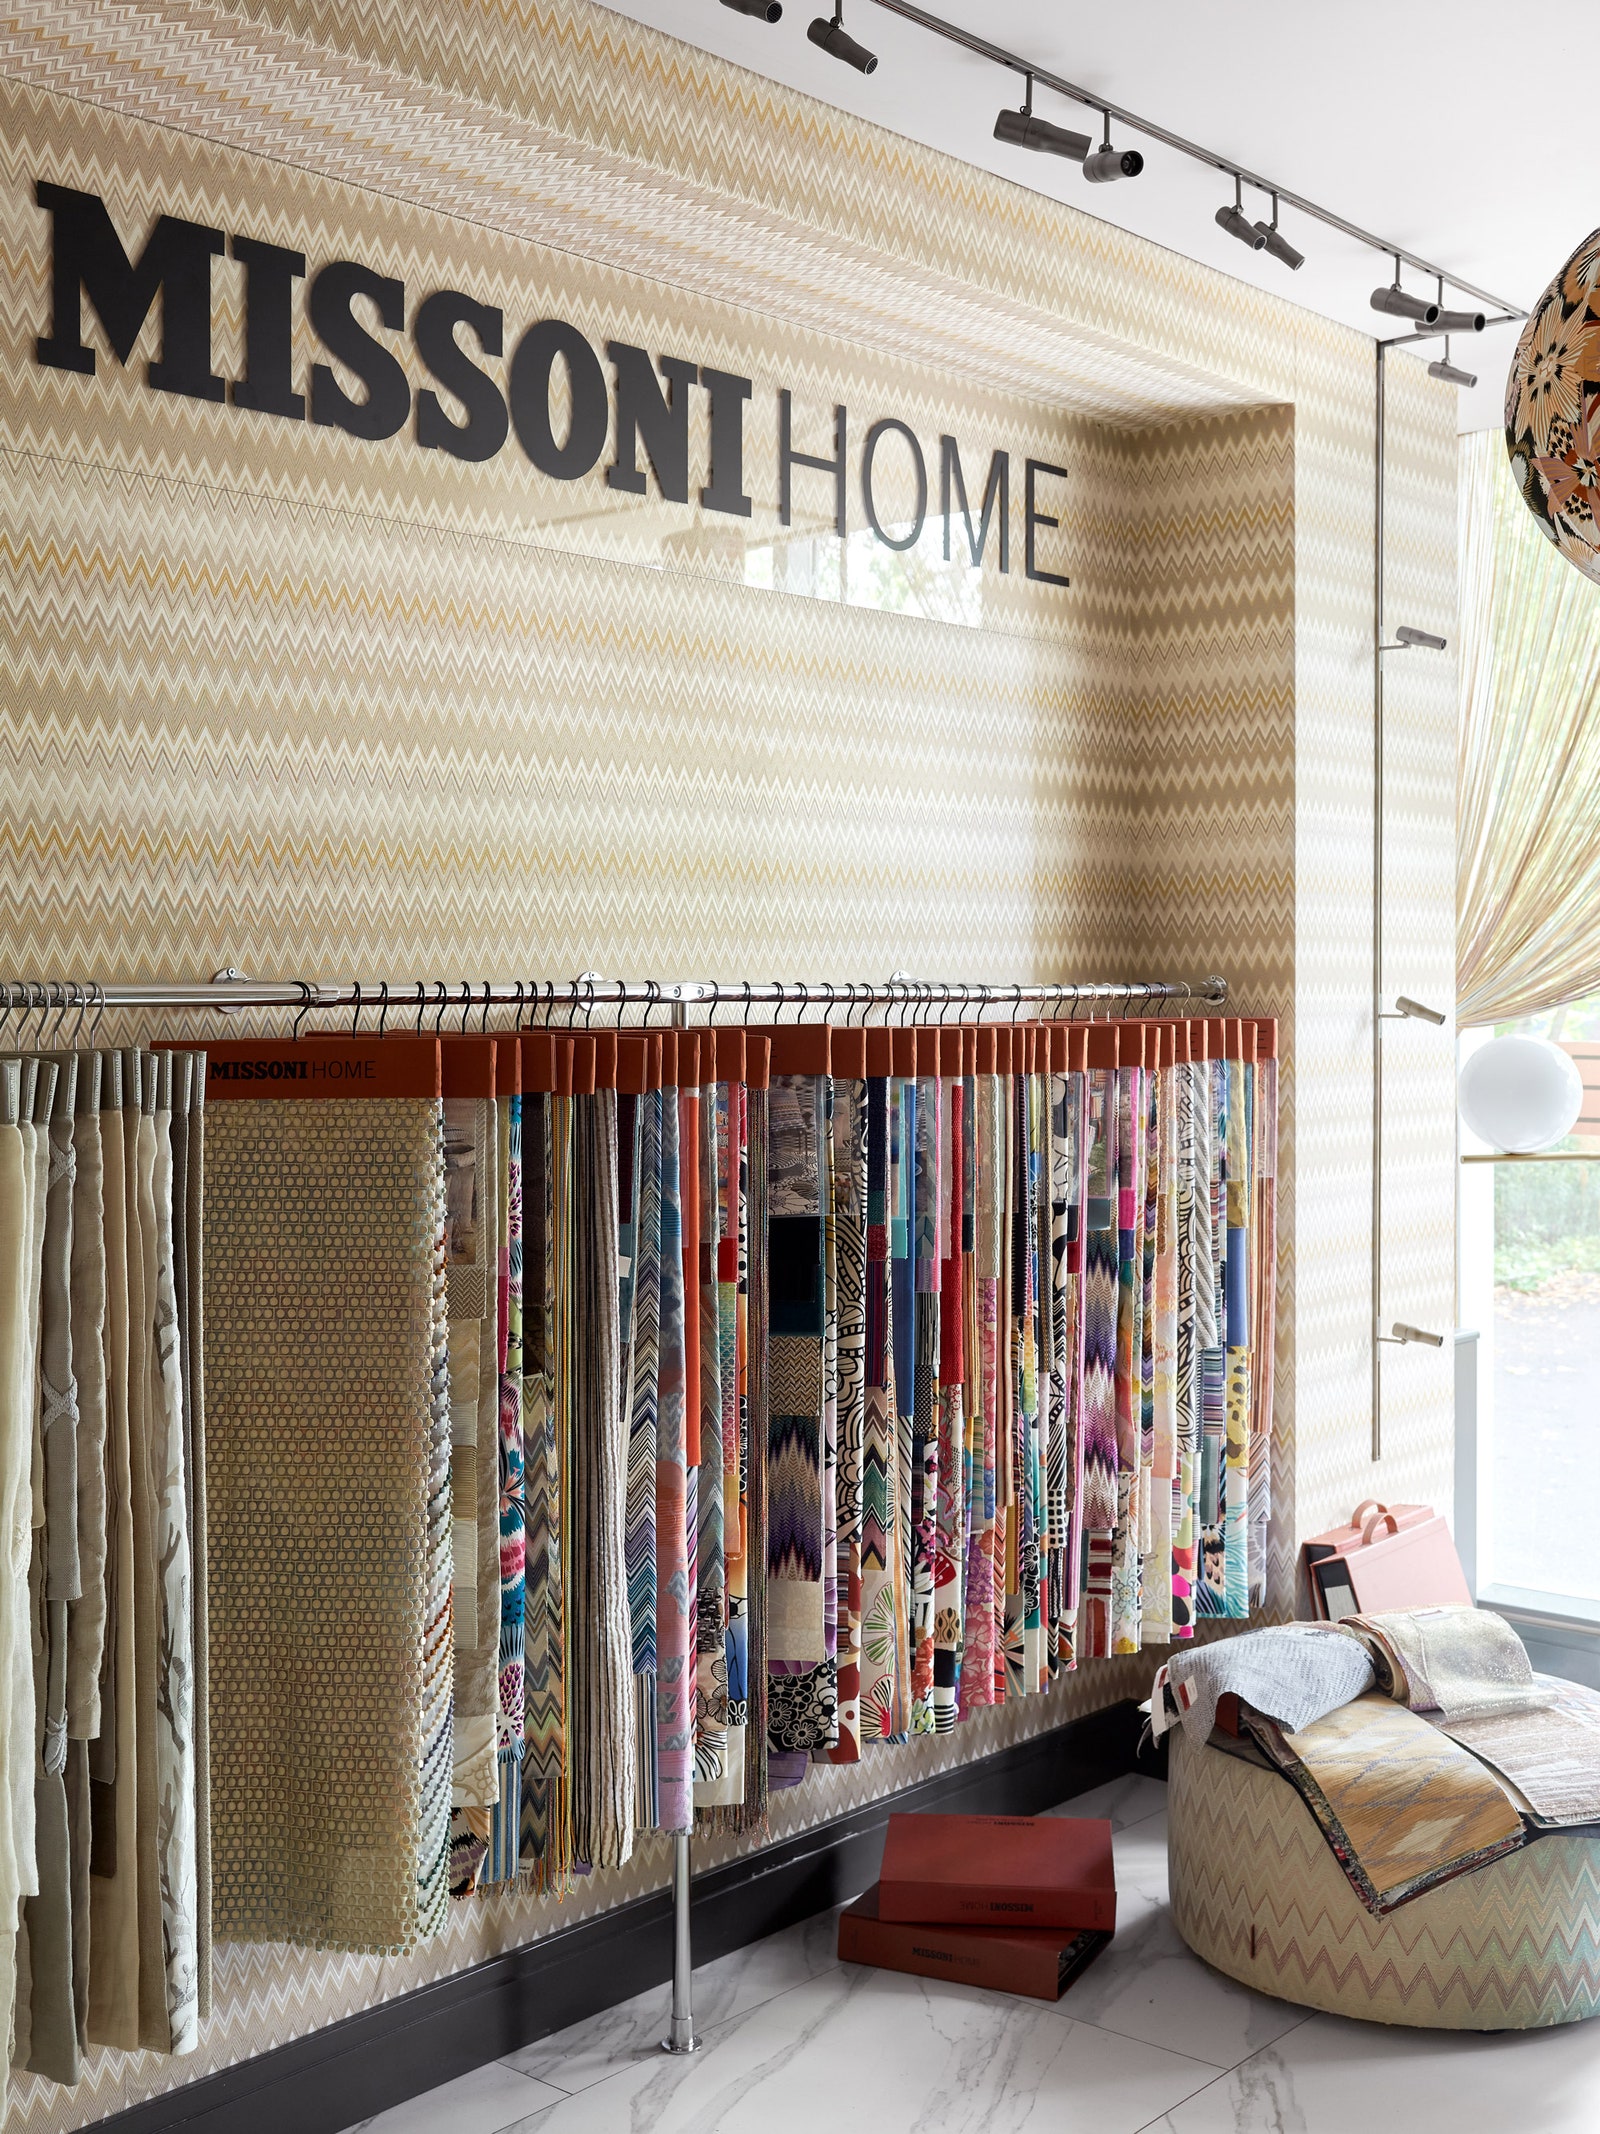 Кабинет Missoni Home. Образцы ткани пуф обои все Missoni Home. Архитектурный свет Flos.